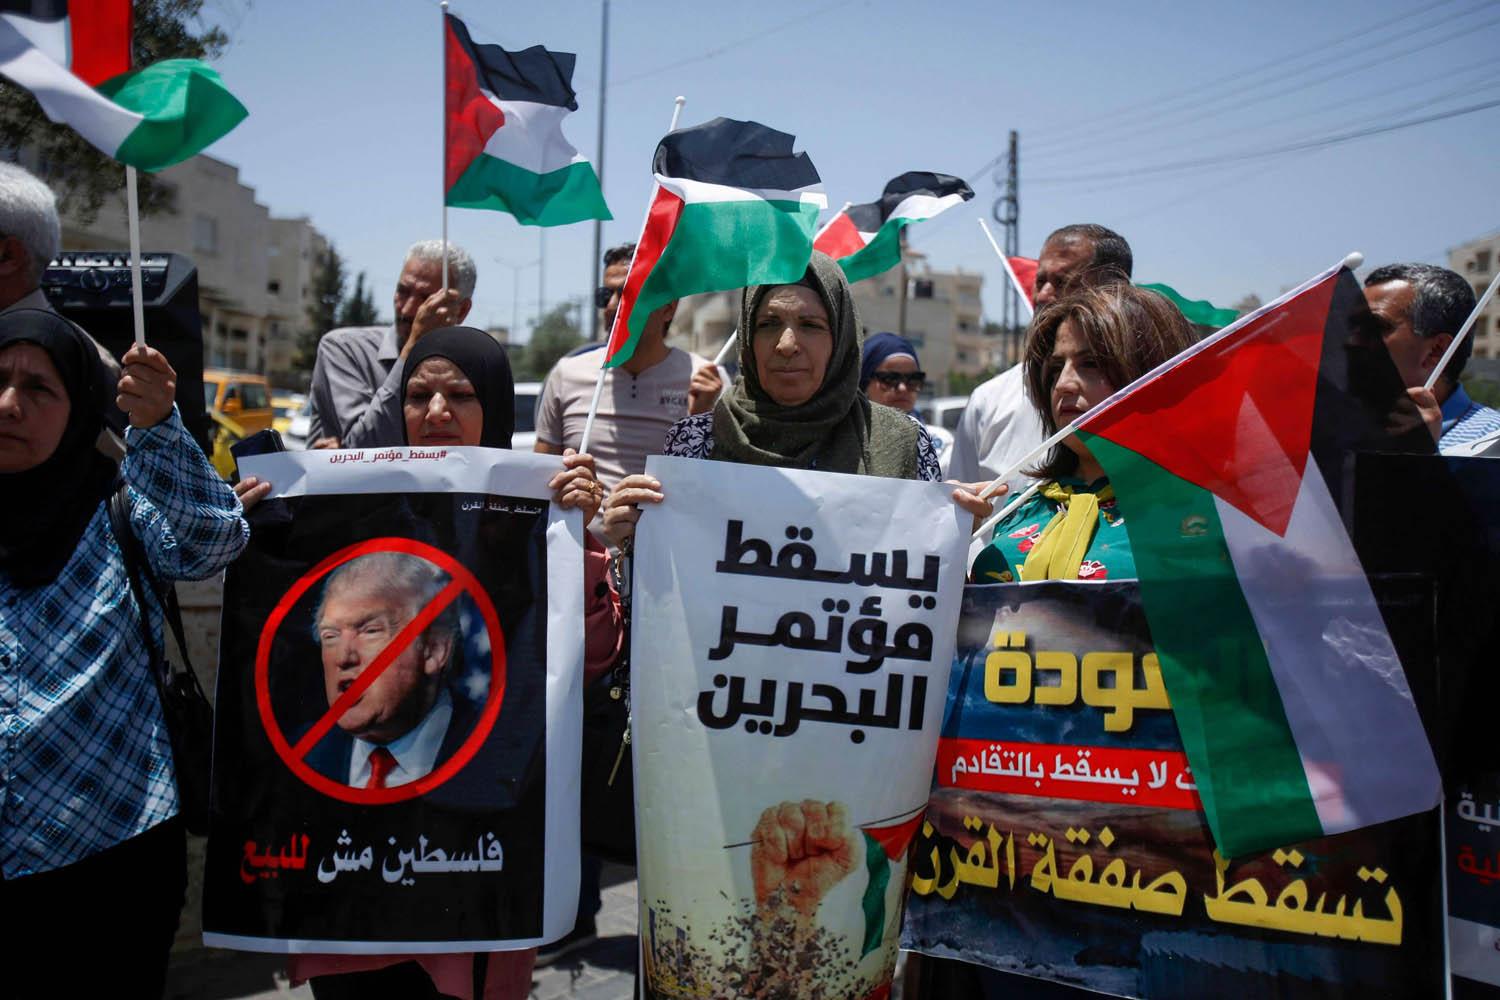 حماس تنظم تجمعًا شعبيًّا في بيروت الثلاثاء القادم رفضا لمؤتمر البحرين